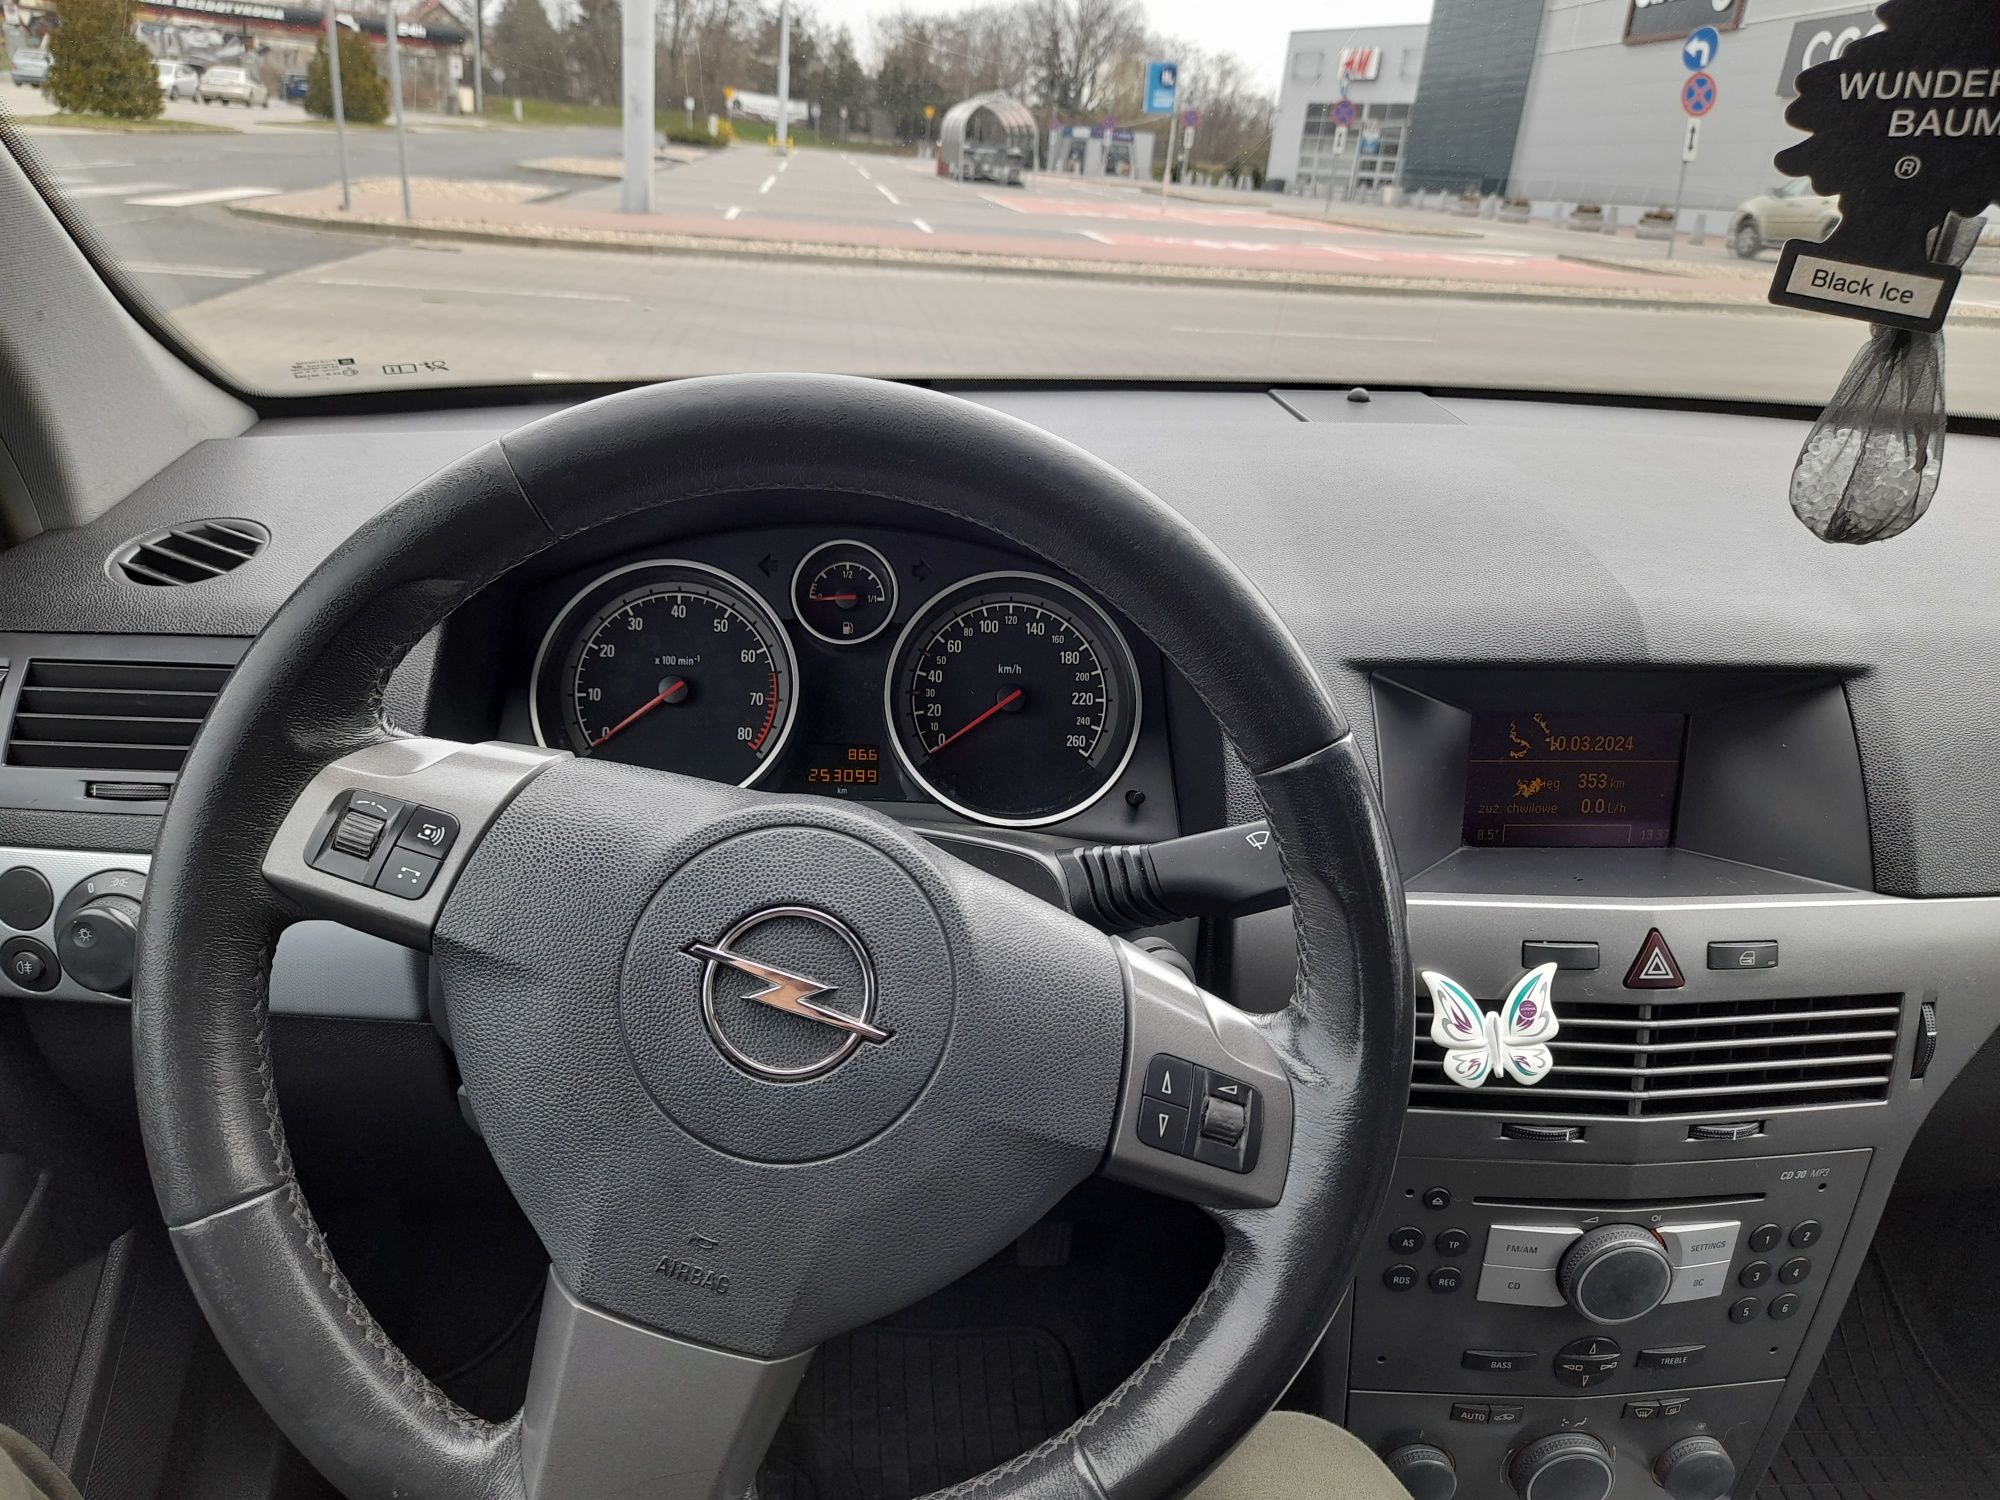 Opel Astra H 1.4 16v